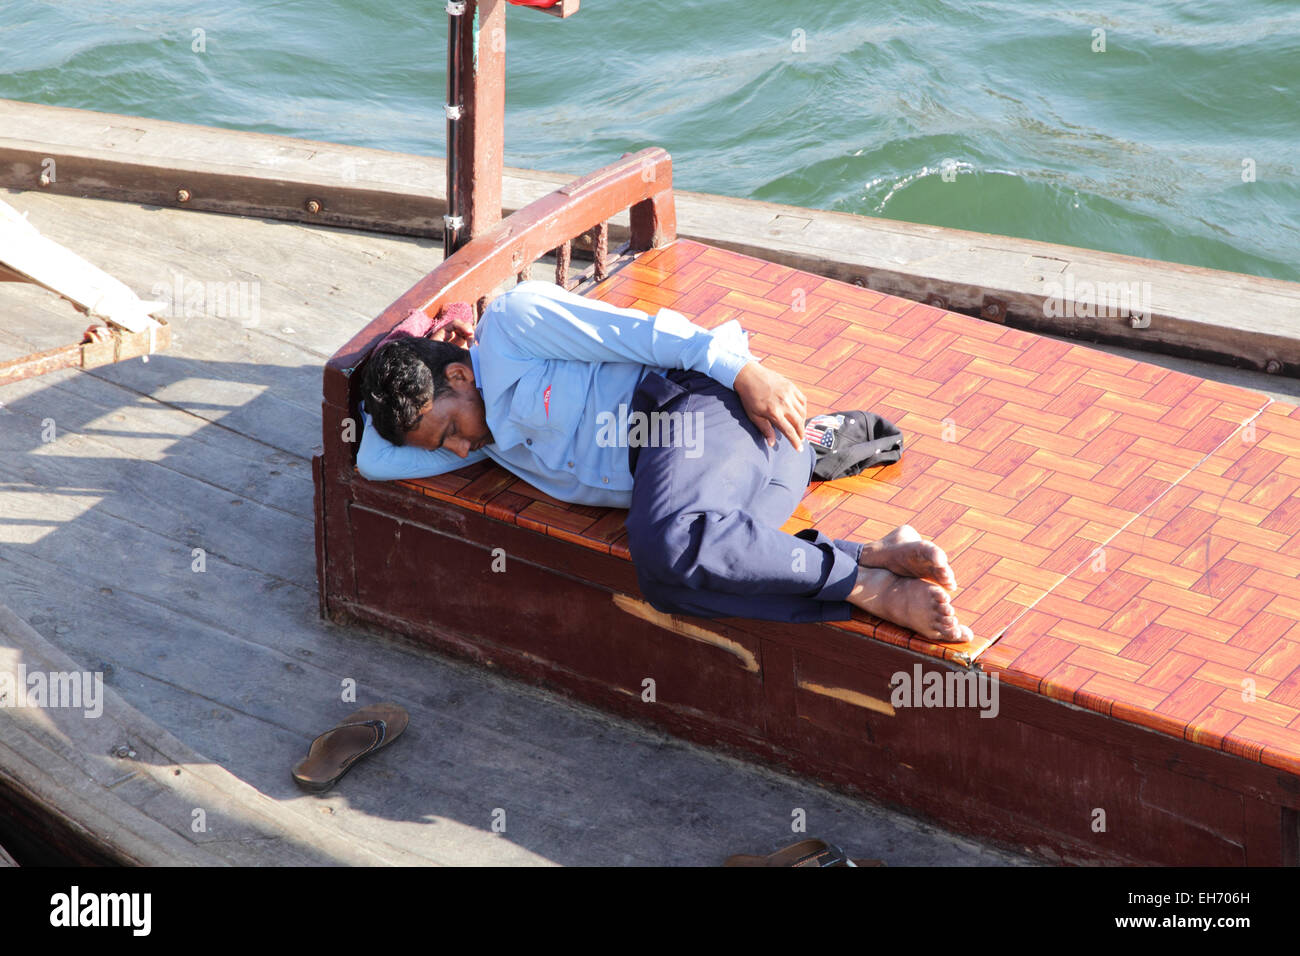 Mann schläft auf einem Abra, eine typische Fähre auf dem Dubai Creek in Dubai, Vereinigte Arabische Emirate. Stockfoto